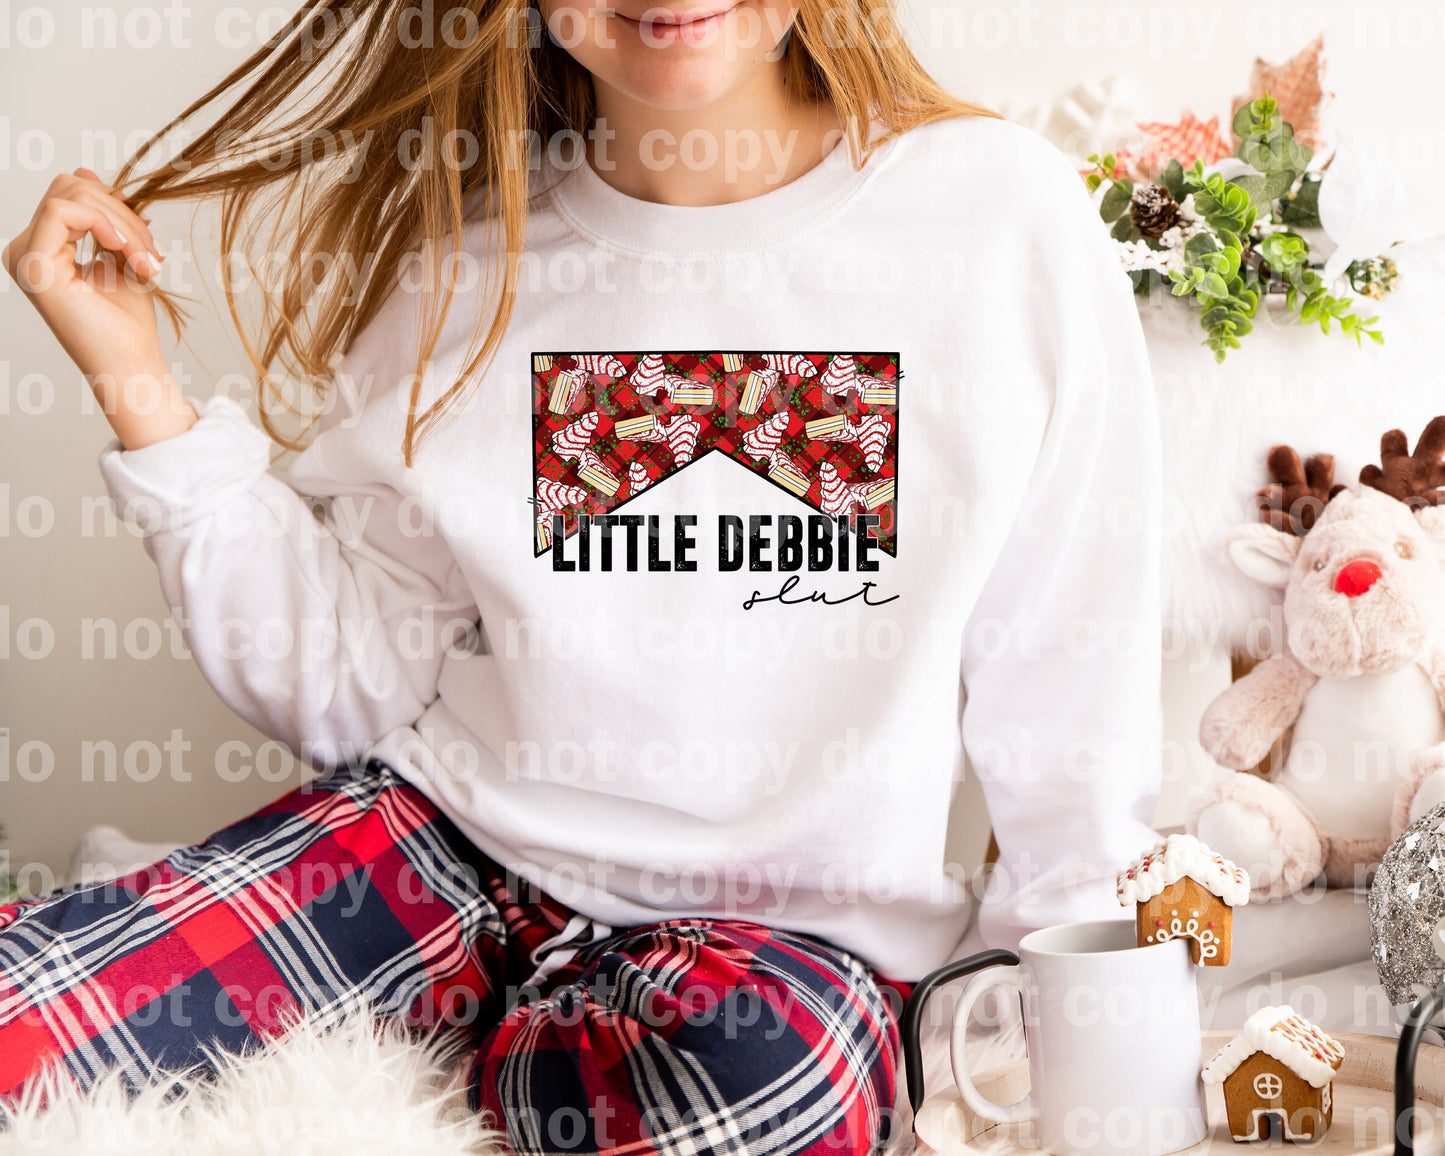 Little Debbie Slut Distressed Dream Print or Sublimation Print